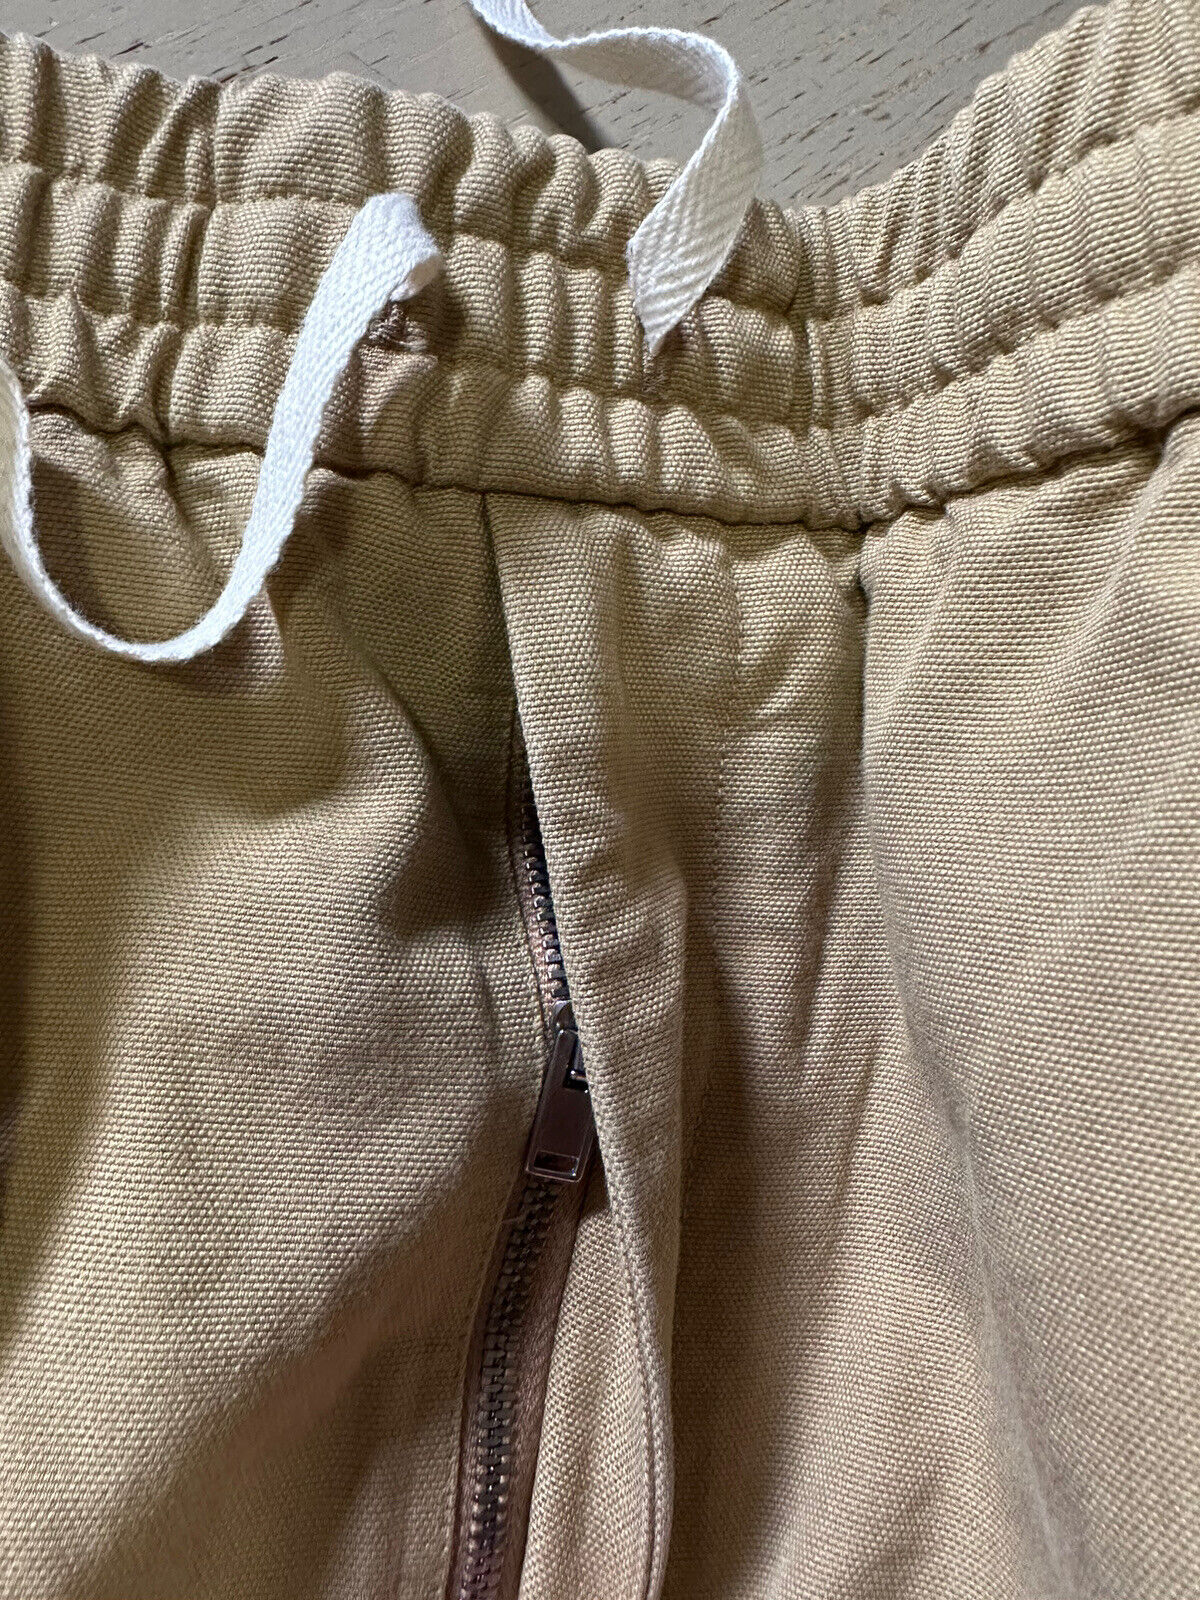 СЗТ $1400 Gucci Мужские короткие брюки из хлопковой парусины средней плотности DK Бежевый/Мул. 40 США/56 ЕС